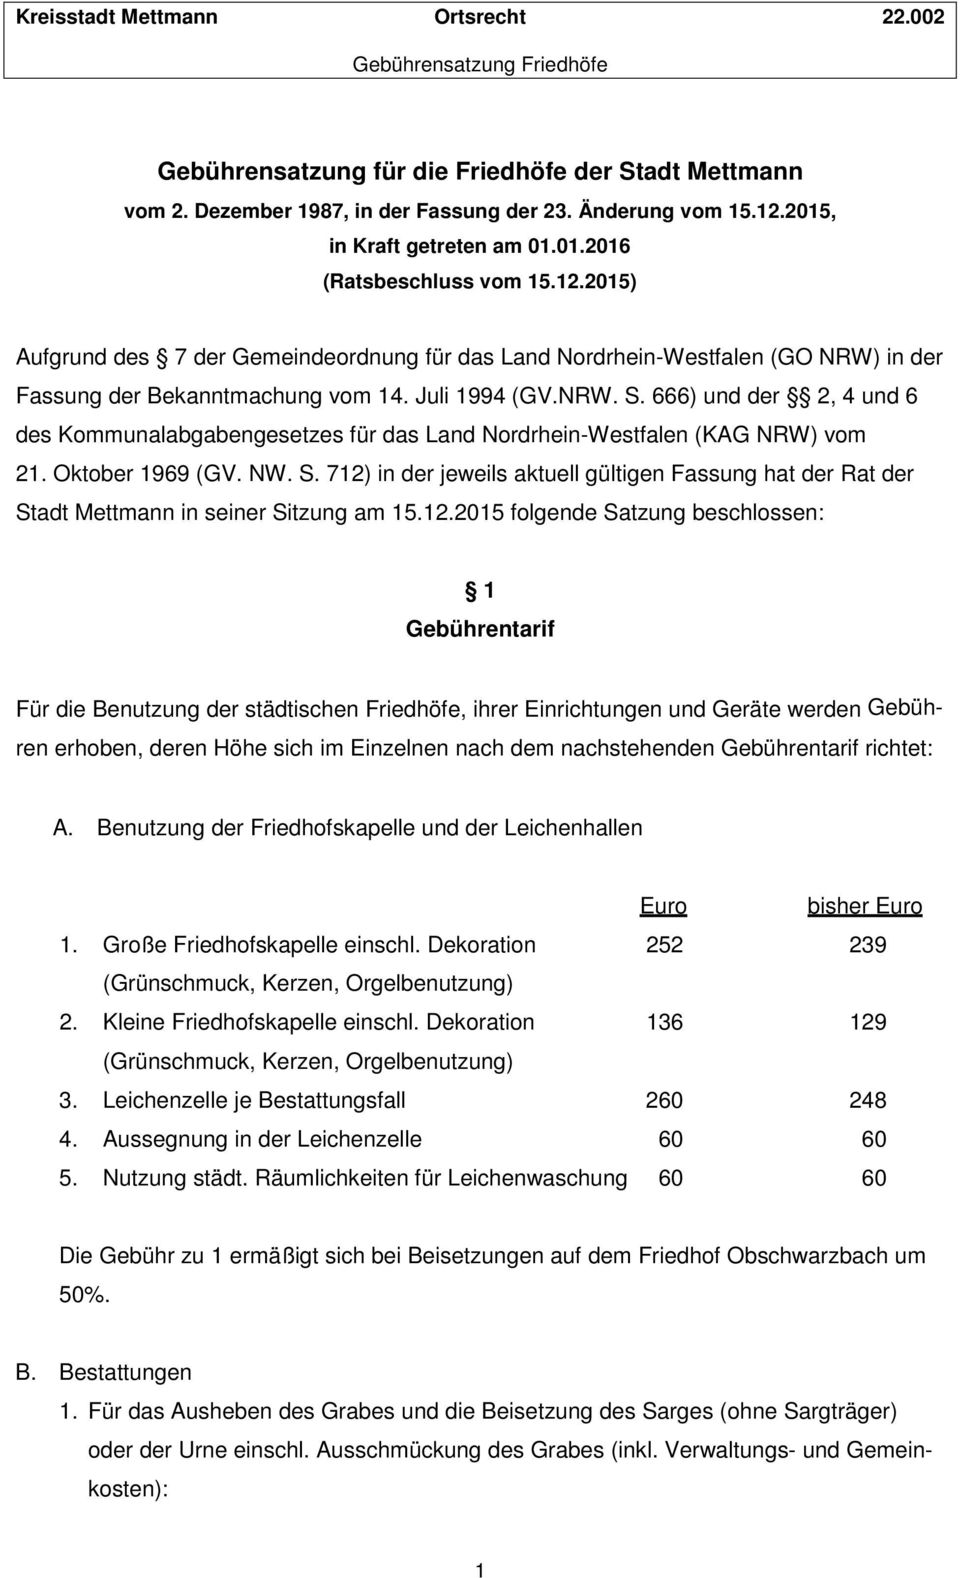 Juli 1994 (GV.NRW. S. 666) und der 2, 4 und 6 des Kommunalabgabengesetzes für das Land Nordrhein-Westfalen (KAG NRW) vom 21. Oktober 1969 (GV. NW. S. 712) in der jeweils aktuell gültigen Fassung hat der Rat der Stadt Mettmann in seiner Sitzung am 15.